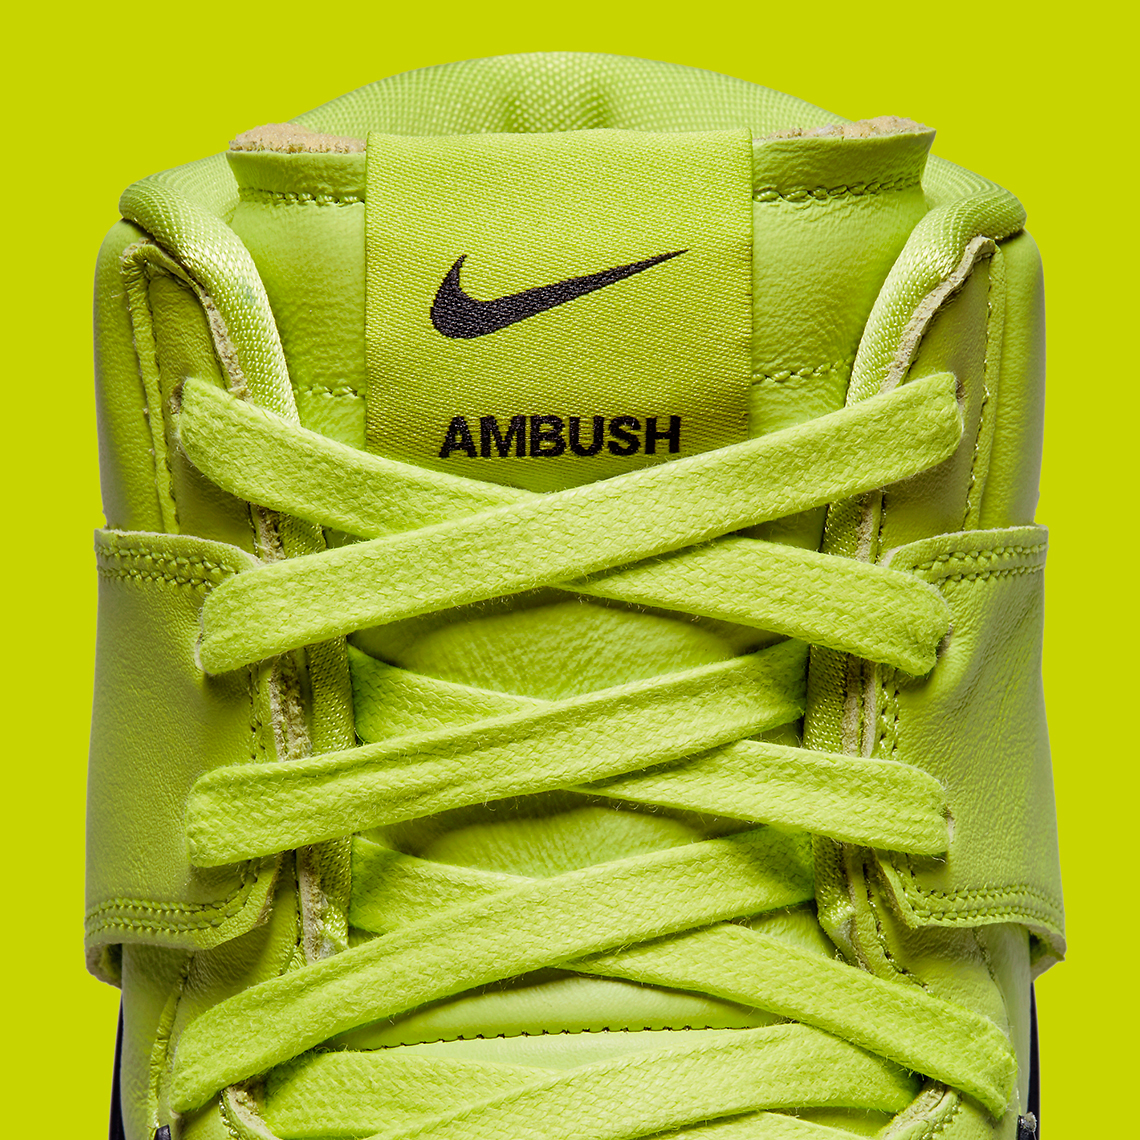 Ambush Nike Dunk High Atomic Green Cu7544 300 Release Date 8